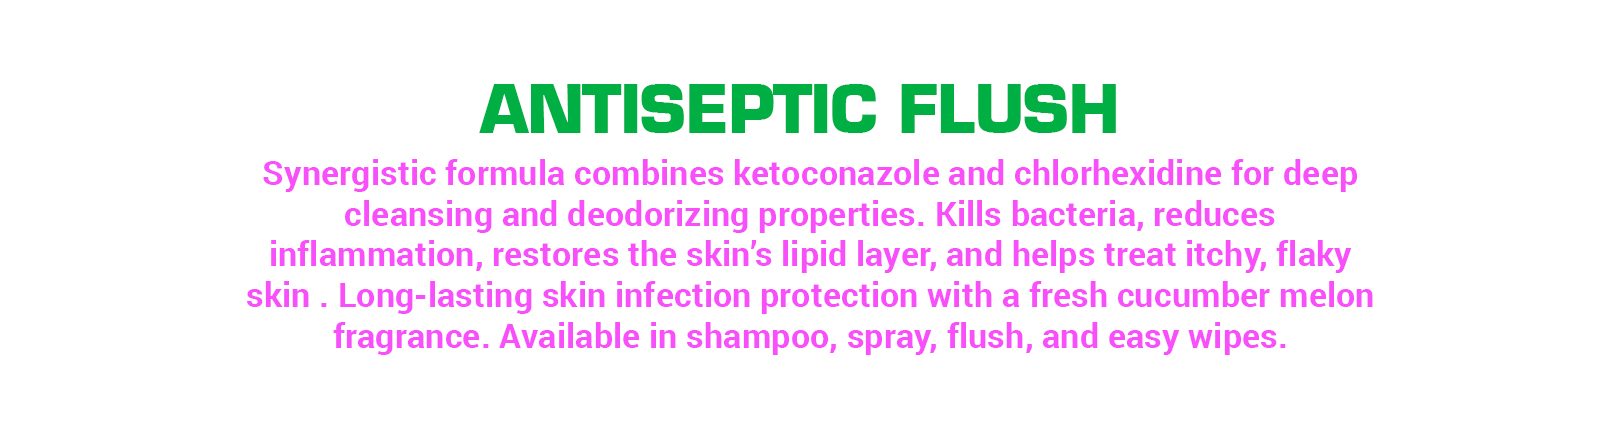 antiseptic-flush